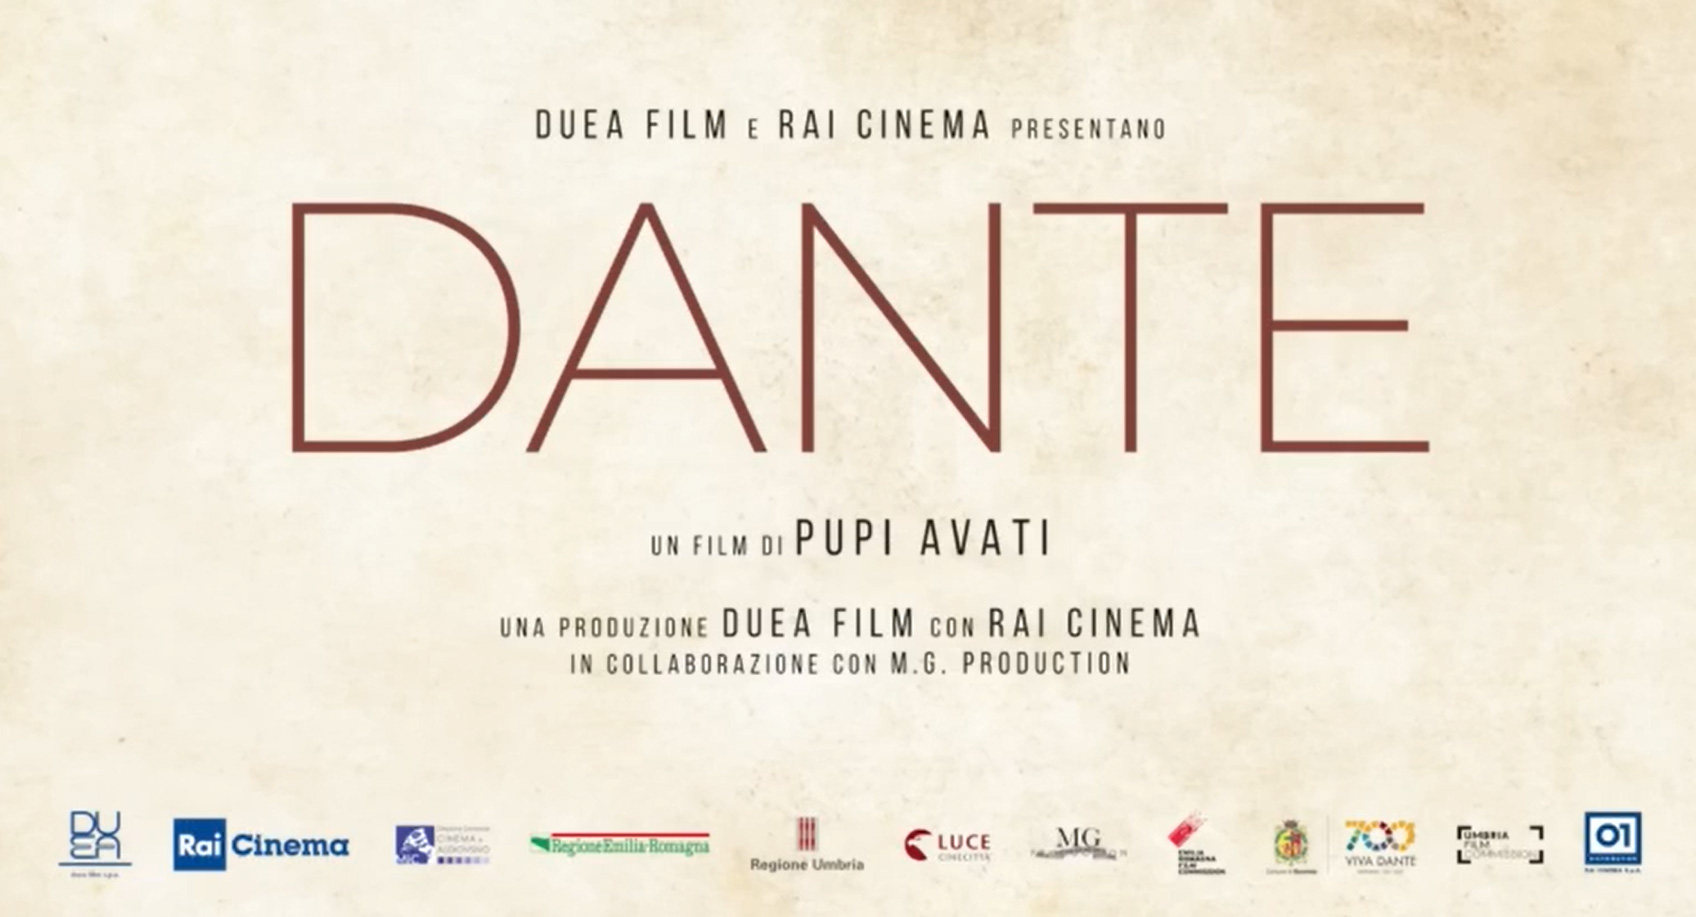 Dante, trailer film di Pupi Avati